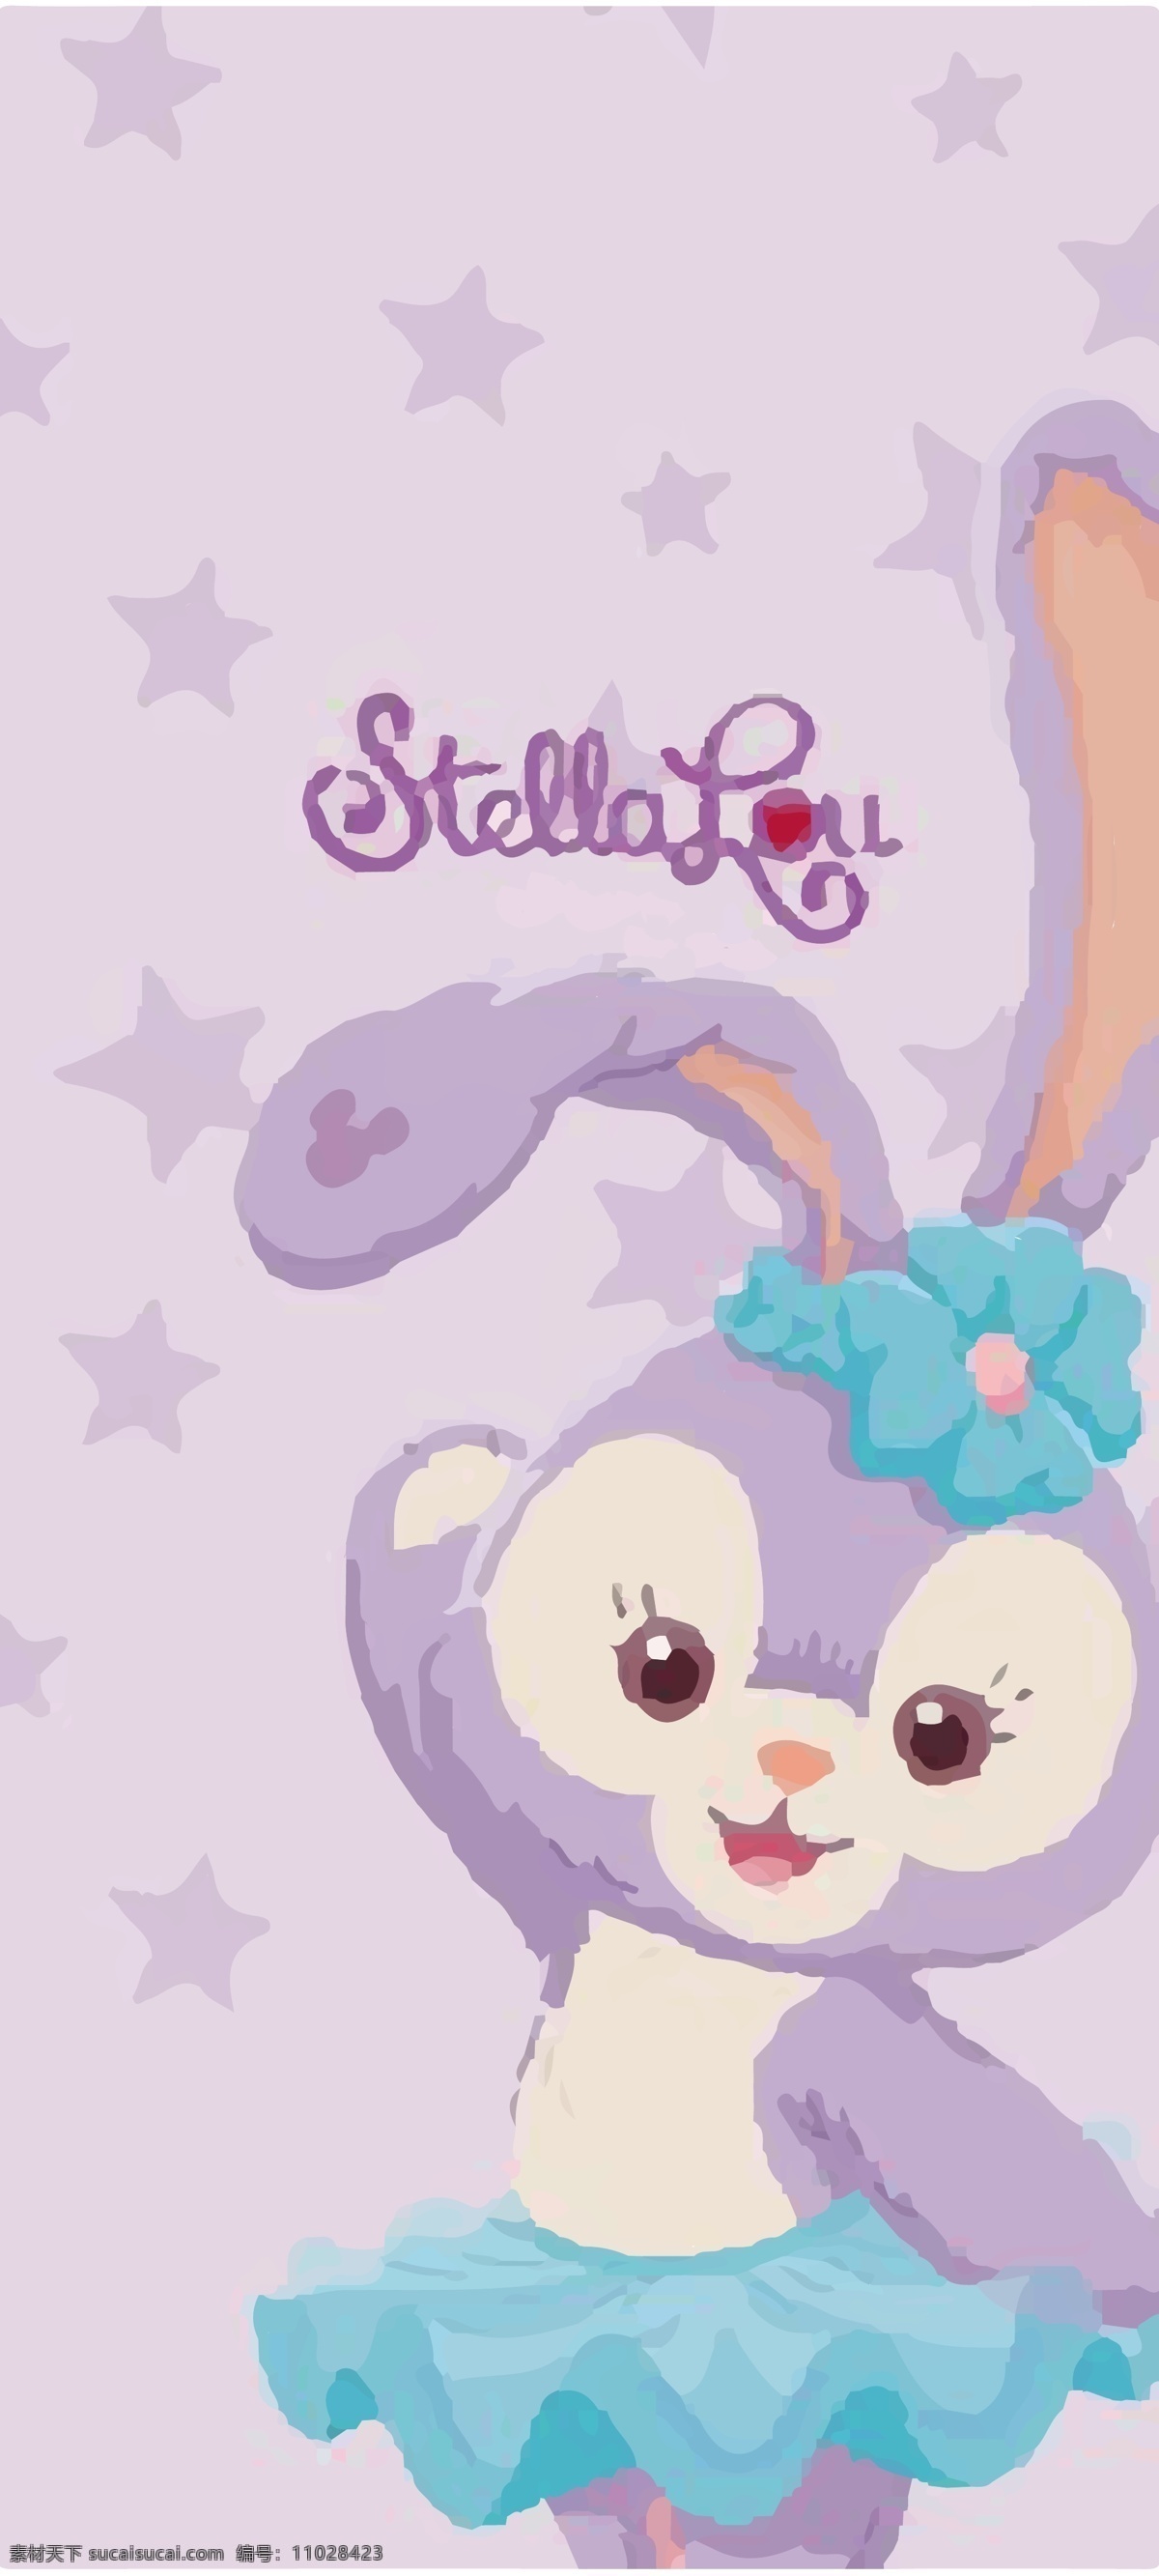 星 戴 露 星戴露 迪士尼 兔子 芭蕾兔 粉紫色兔子 动漫动画 动漫人物